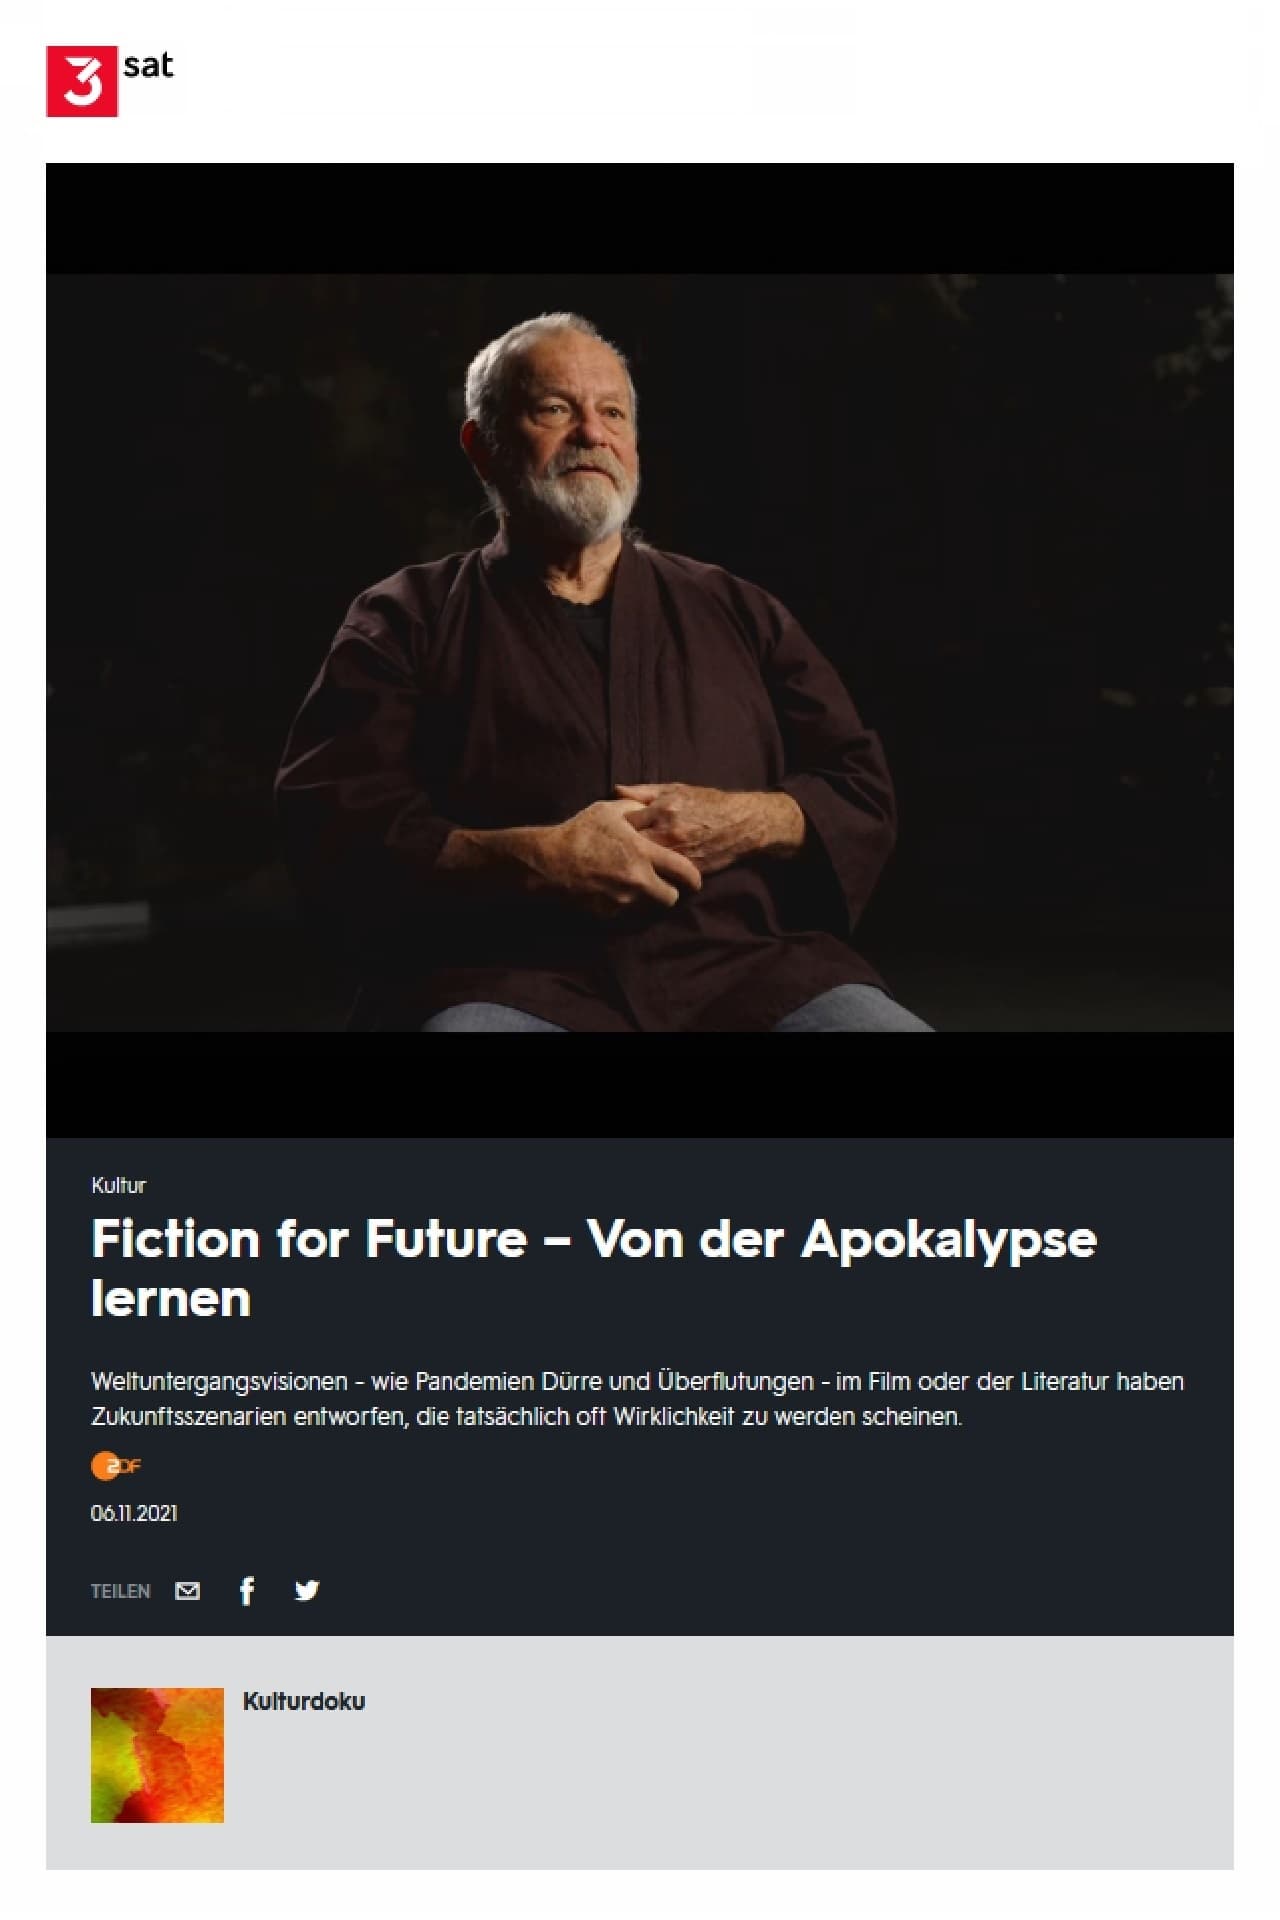 Fiction for Future - Von der Apokalypse lernen